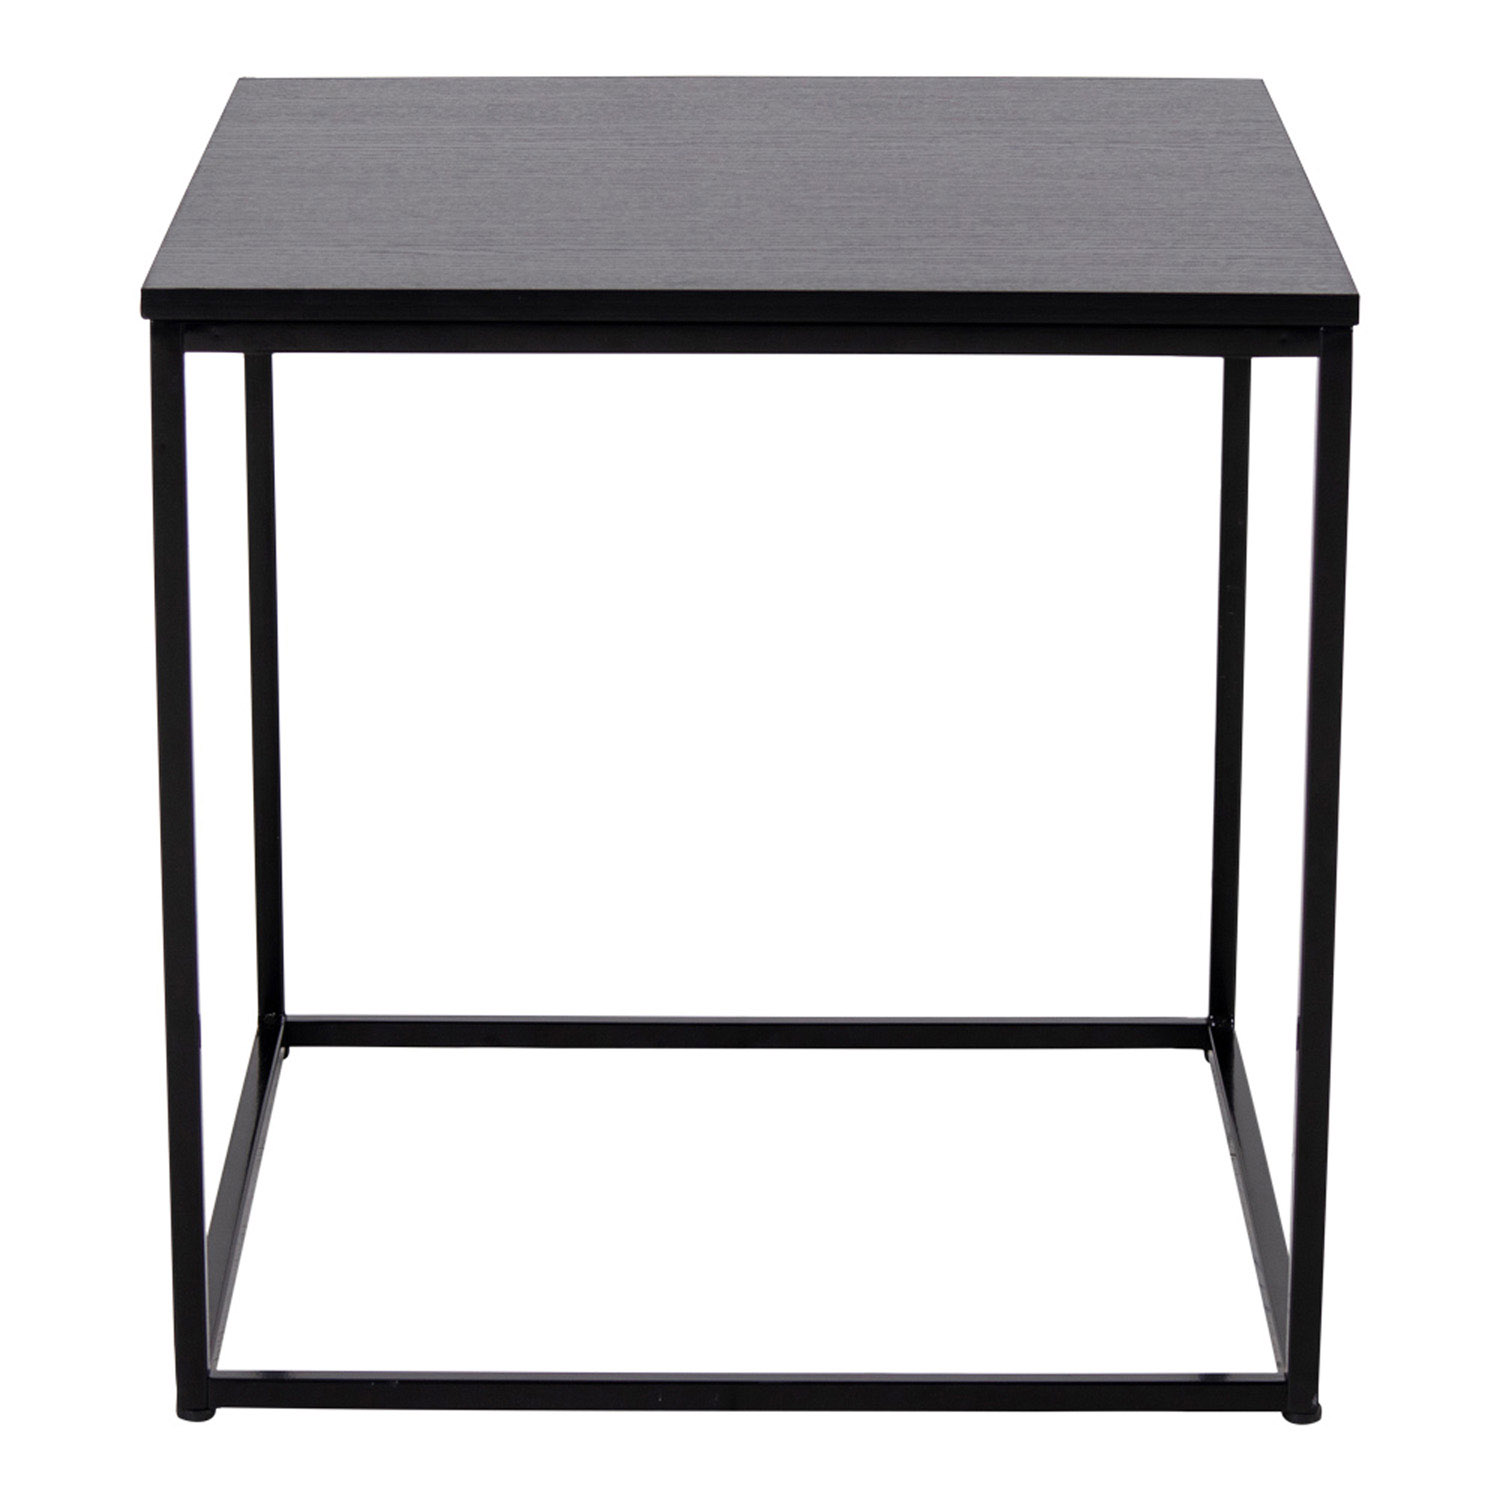 HOUSE NORDIC kvadratisk Vita hjørnebord - sort melamin og stål (45x45)